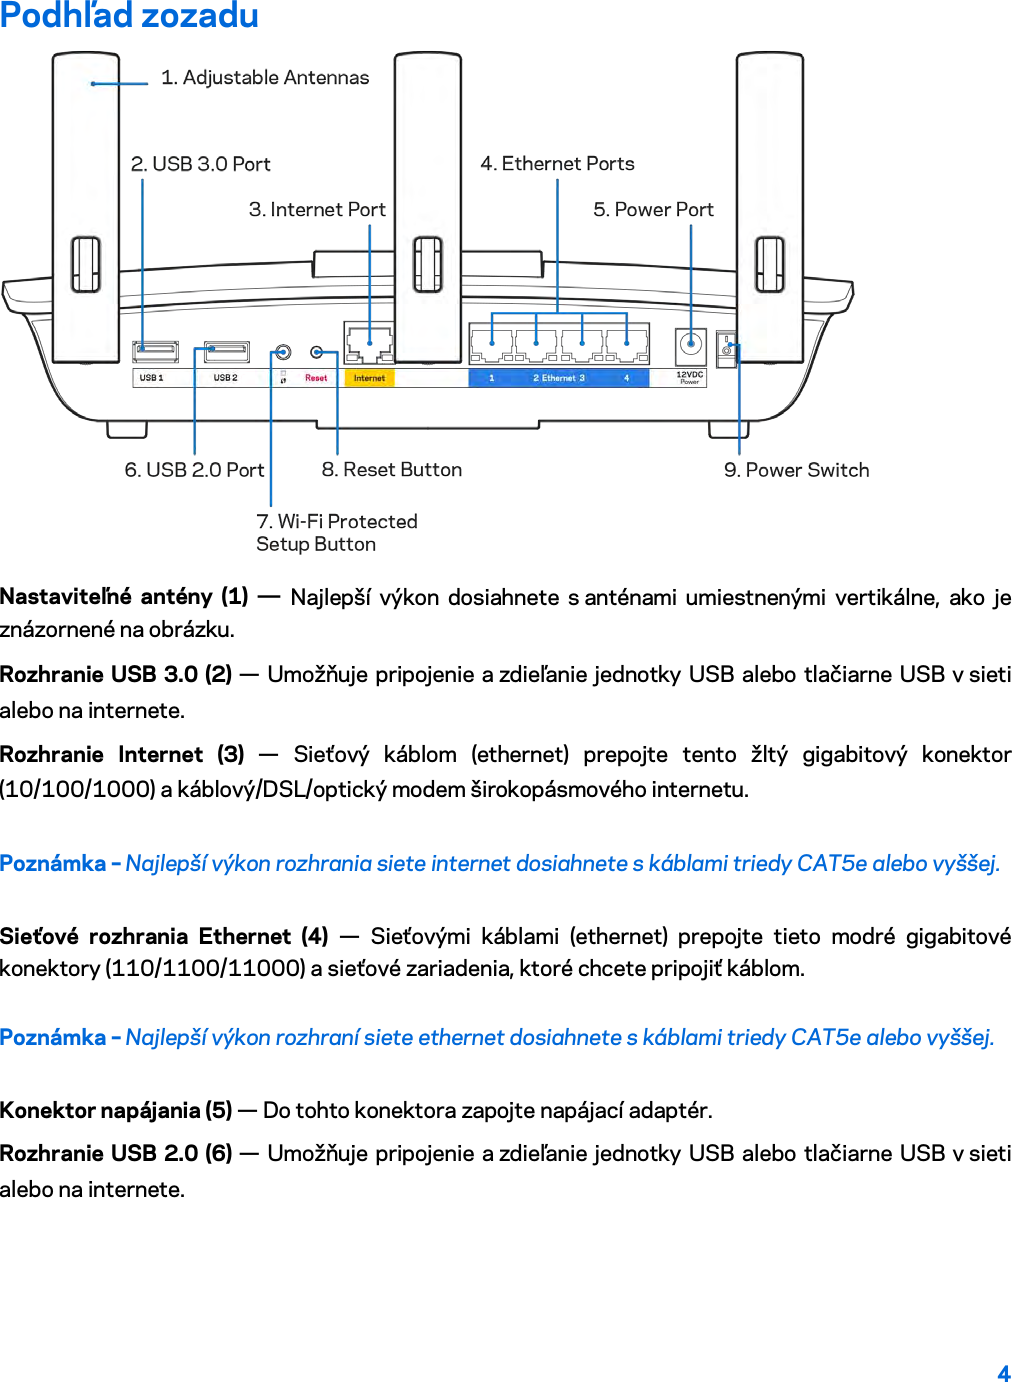 4  Podhľad zozadu  Nastaviteľné antény (1) — Najlepší výkon dosiahnete s anténami umiestnenými vertikálne, ako je znázornené na obrázku. Rozhranie USB 3.0 (2) — Umožňuje pripojenie a zdieľanie jednotky USB alebo tlačiarne USB v sieti alebo na internete. Rozhranie Internet (3)  —  Sieťový káblom (ethernet) prepojte tento žltý gigabitový konektor (10/100/1000) a káblový/DSL/optický modem širokopásmového internetu. Poznámka – Najlepší výkon rozhrania siete internet dosiahnete s káblami triedy CAT5e alebo vyššej. Sieťové rozhrania Ethernet (4) — Sieťovými káblami (ethernet) prepojte tieto modré gigabitové konektory (110/1100/11000) a sieťové zariadenia, ktoré chcete pripojiť káblom. Poznámka – Najlepší výkon rozhraní siete ethernet dosiahnete s káblami triedy CAT5e alebo vyššej. Konektor napájania (5) — Do tohto konektora zapojte napájací adaptér. Rozhranie USB 2.0 (6) — Umožňuje pripojenie a zdieľanie jednotky USB alebo tlačiarne USB v sieti alebo na internete. 